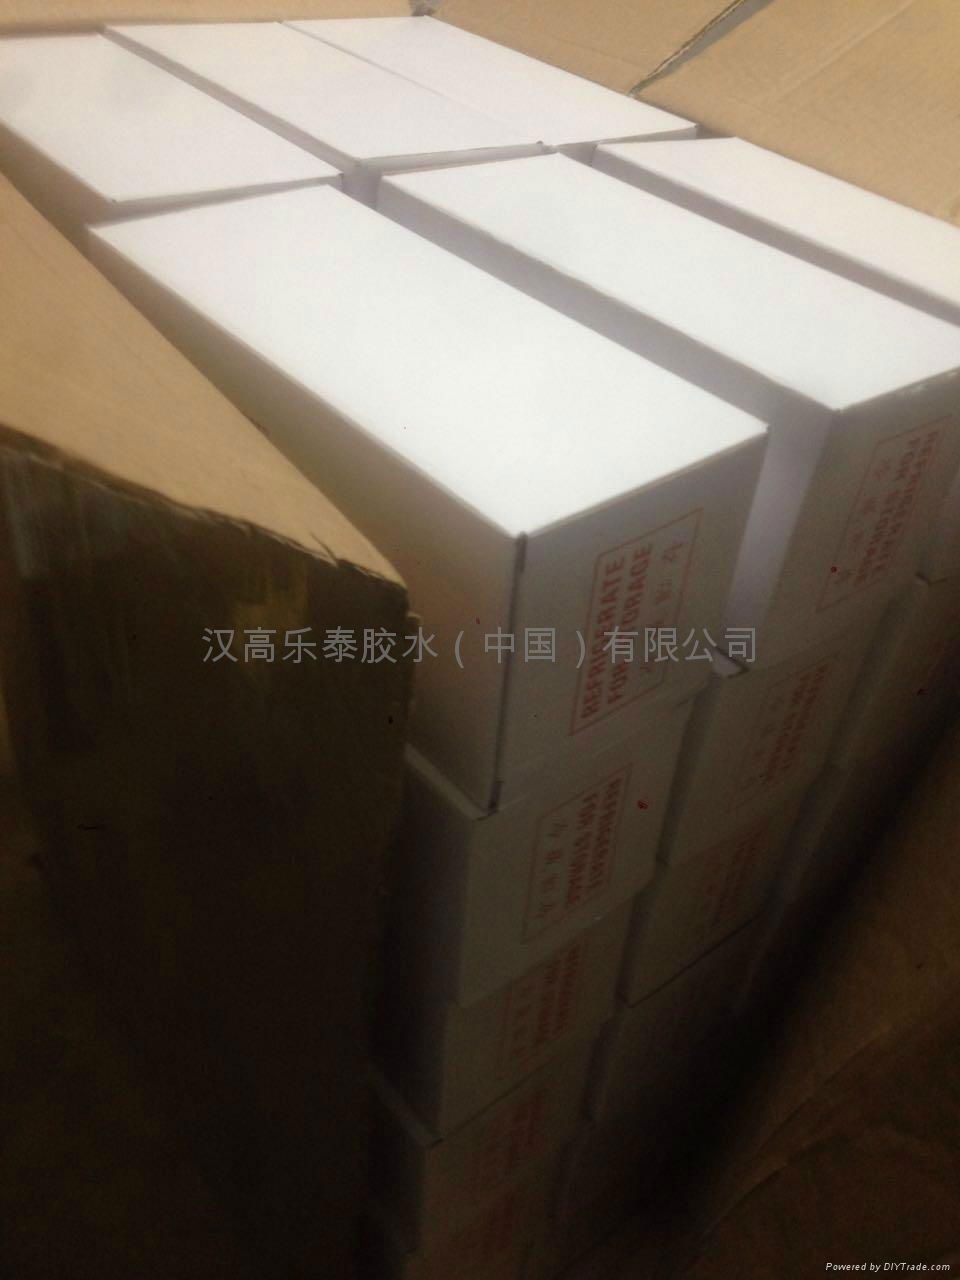 Loctite 401 glue loctite henkel loctite 401 glue in China 3